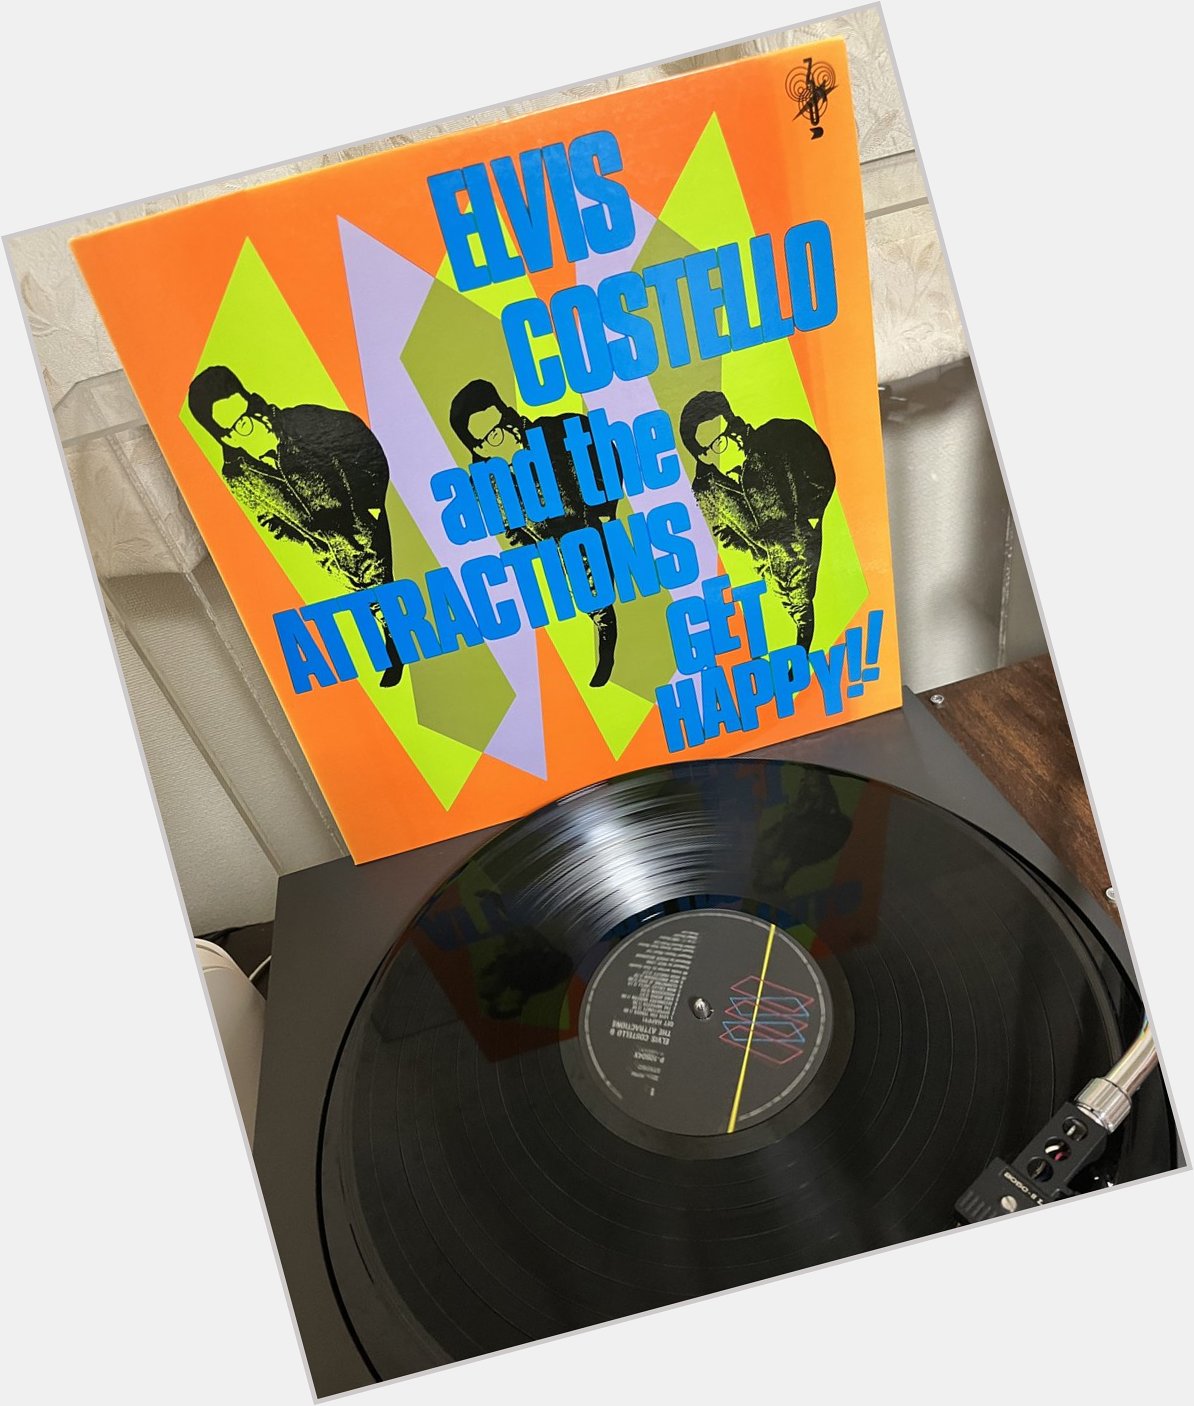 Happy Birthday to Elvis Costello

15                                    